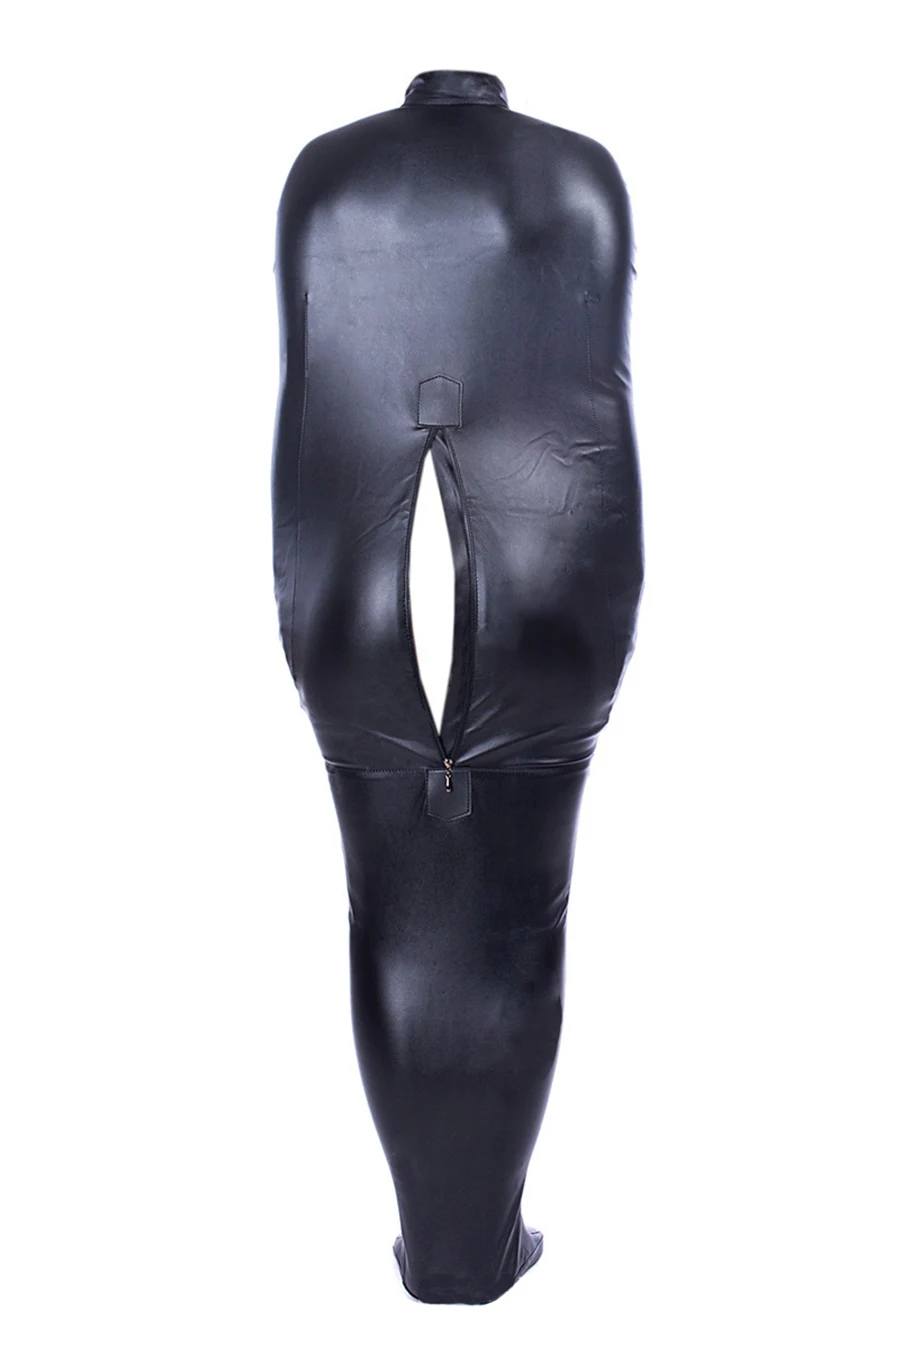 Черный полный мешок для связывания тела с открытой головкой, скрытый подлокотник, pu кожа Сексуальная Русалка Мумия спальный мешок эротическая игрушка для секса куртка